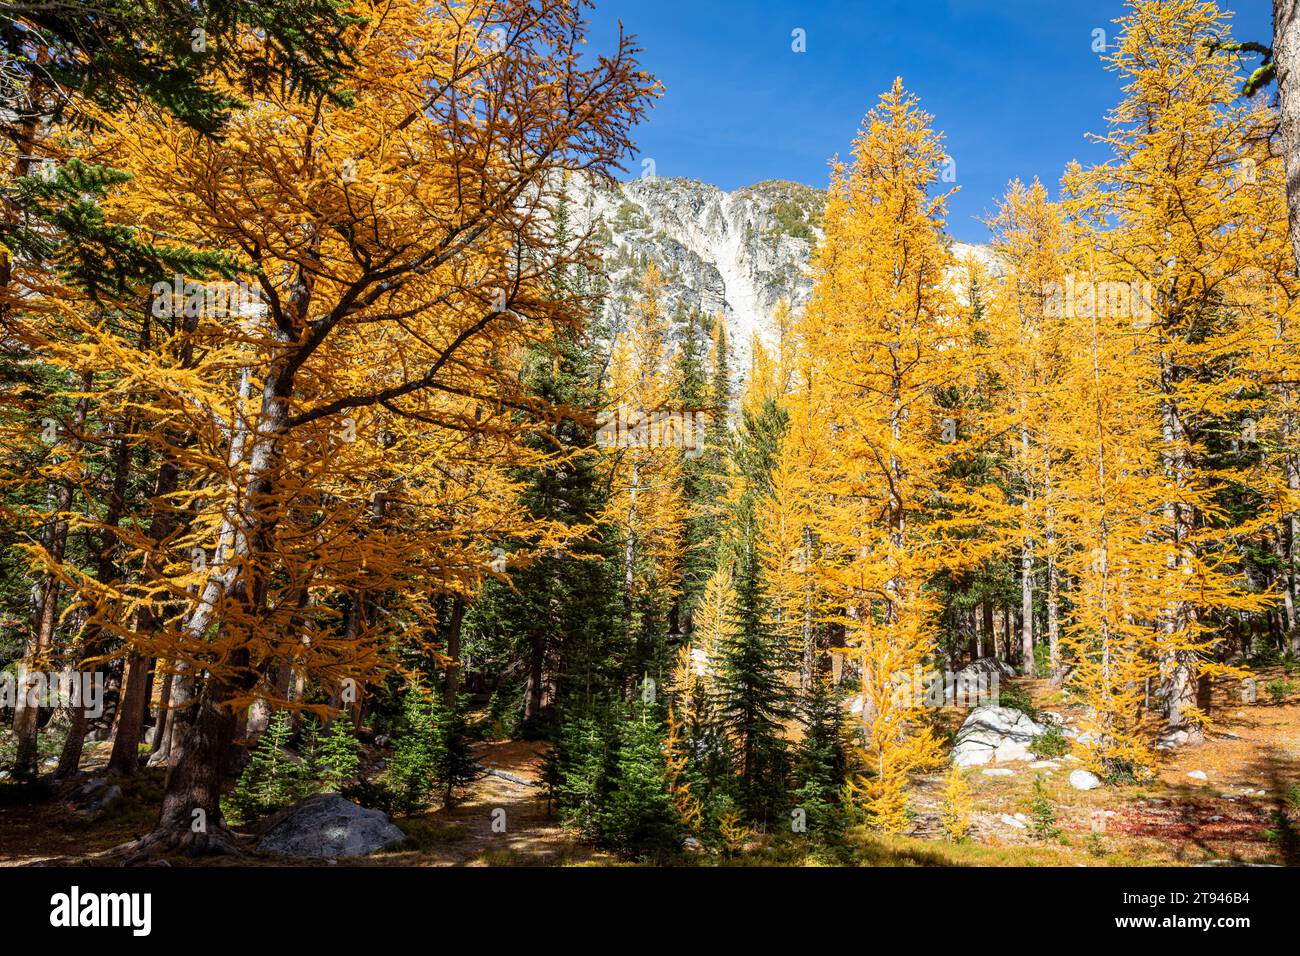 WA23725-00...WASHINGTON - Mélèze aux couleurs d'automne près du lac Upper Eagle dans la forêt nationale Okanogan-Wenatchee. Banque D'Images